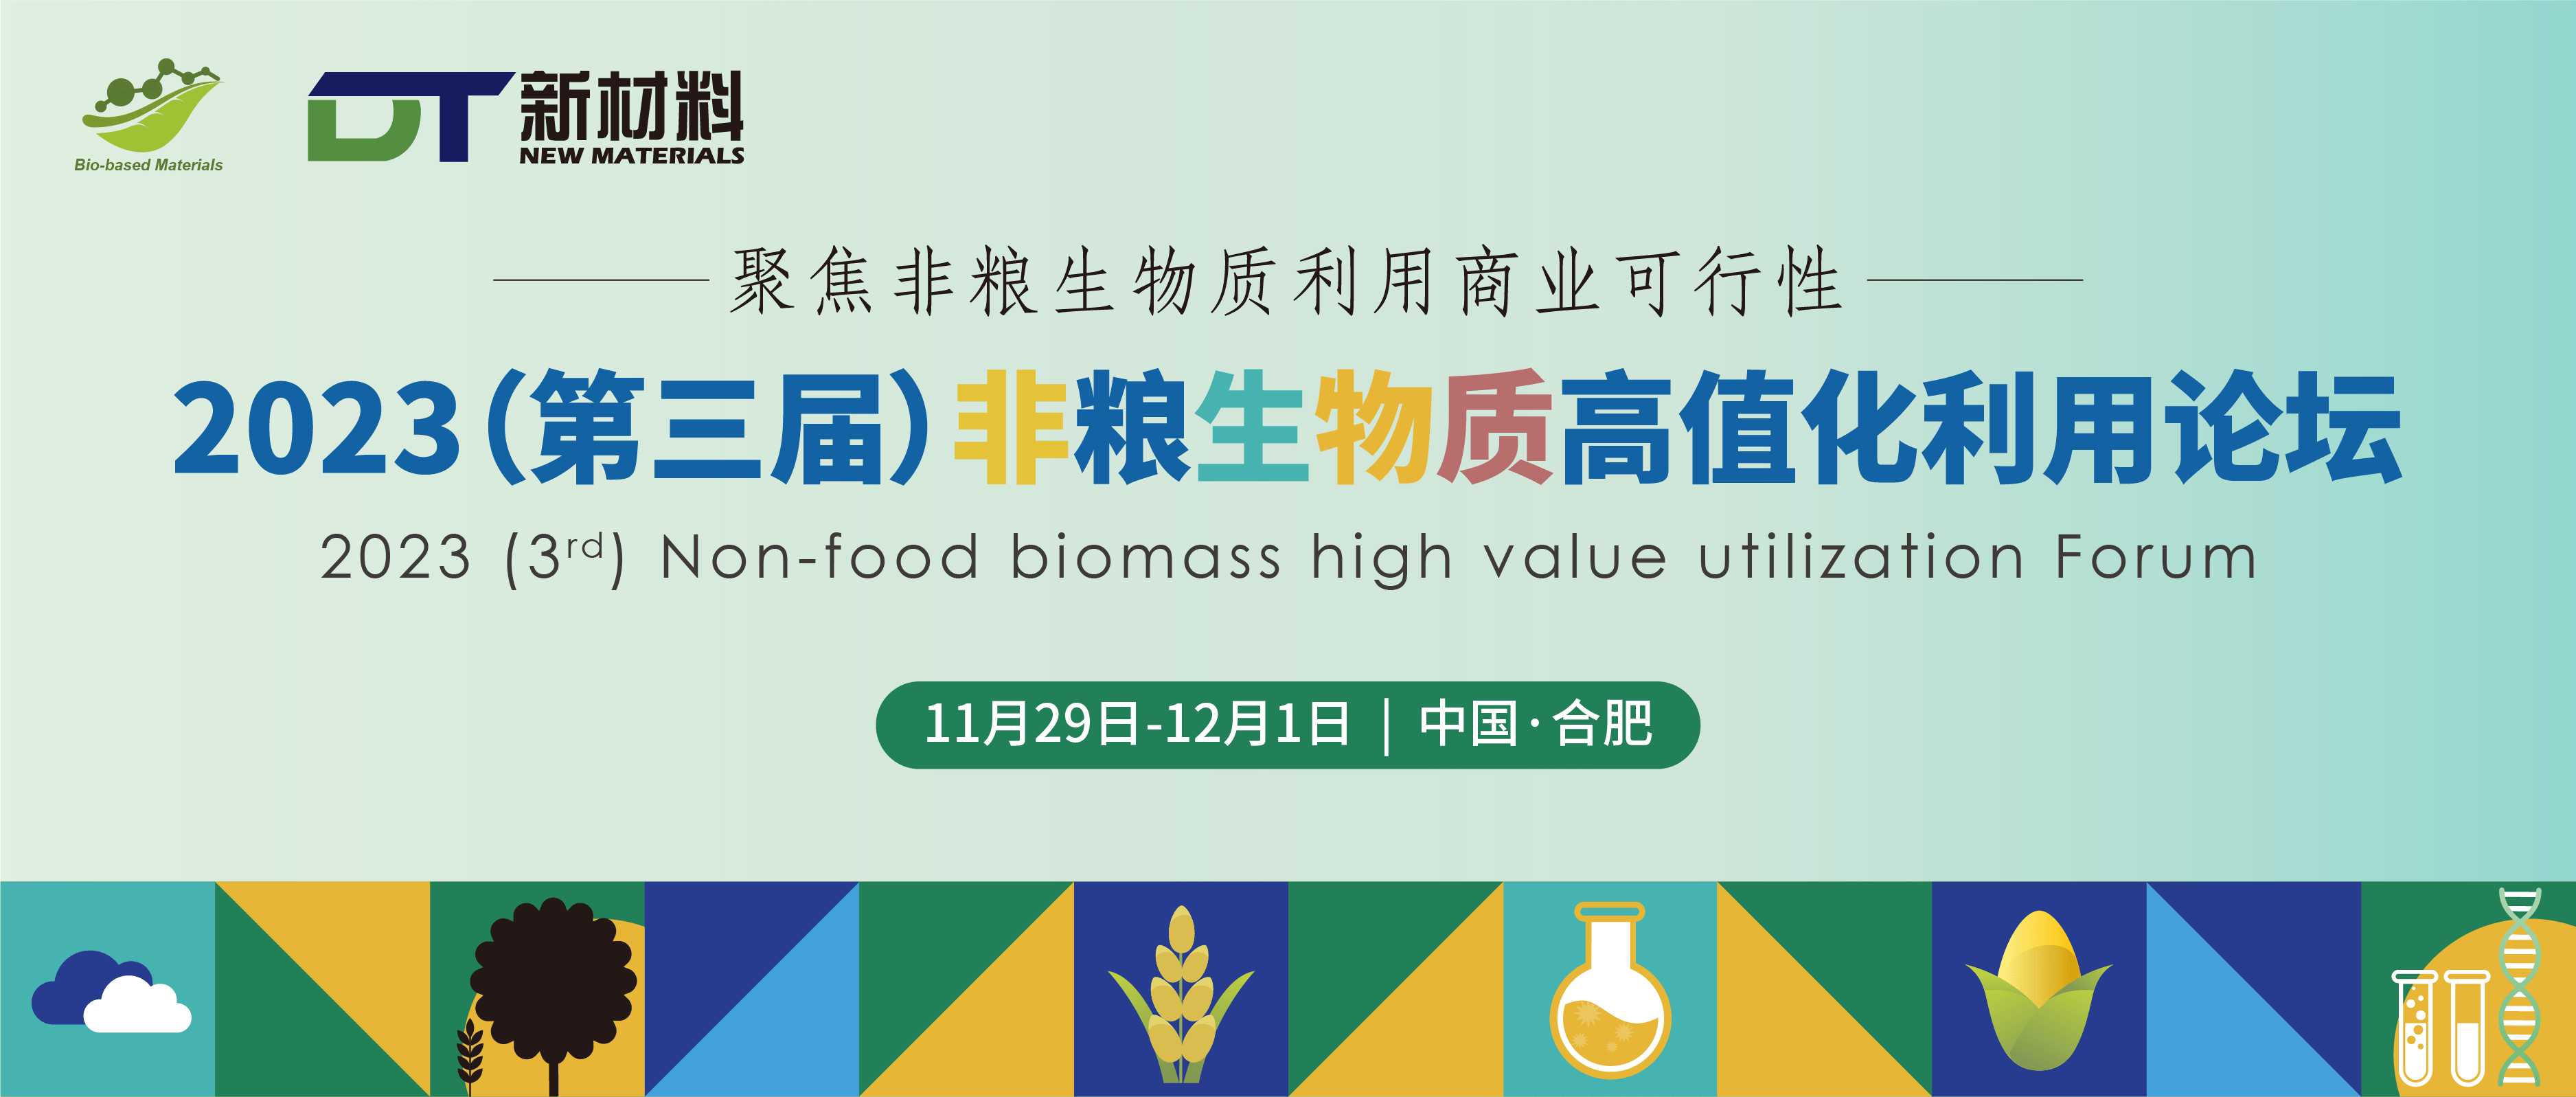 2023(第三届)非粮生物质高值化利用论坛